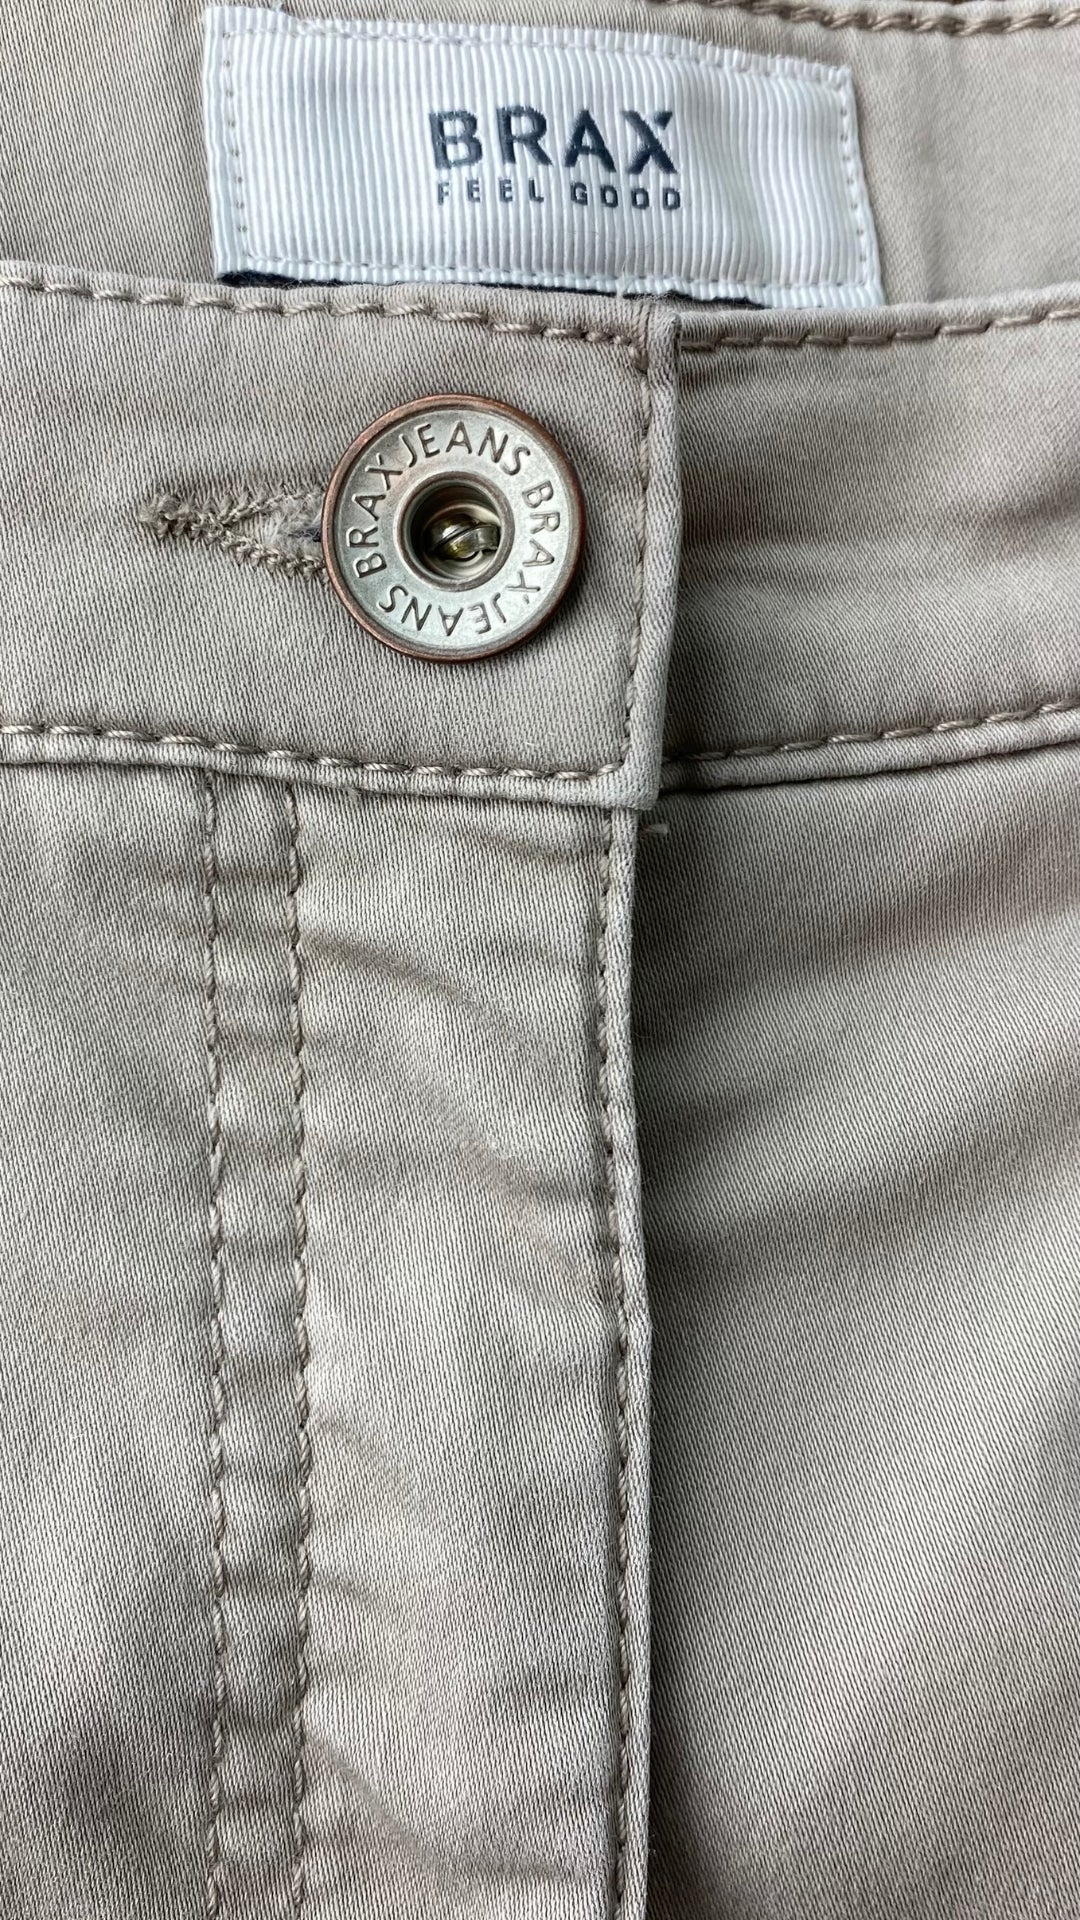 Pantalon taupe coupe droite, marque Brax, taille 27. Vue du bouton à l'avant.